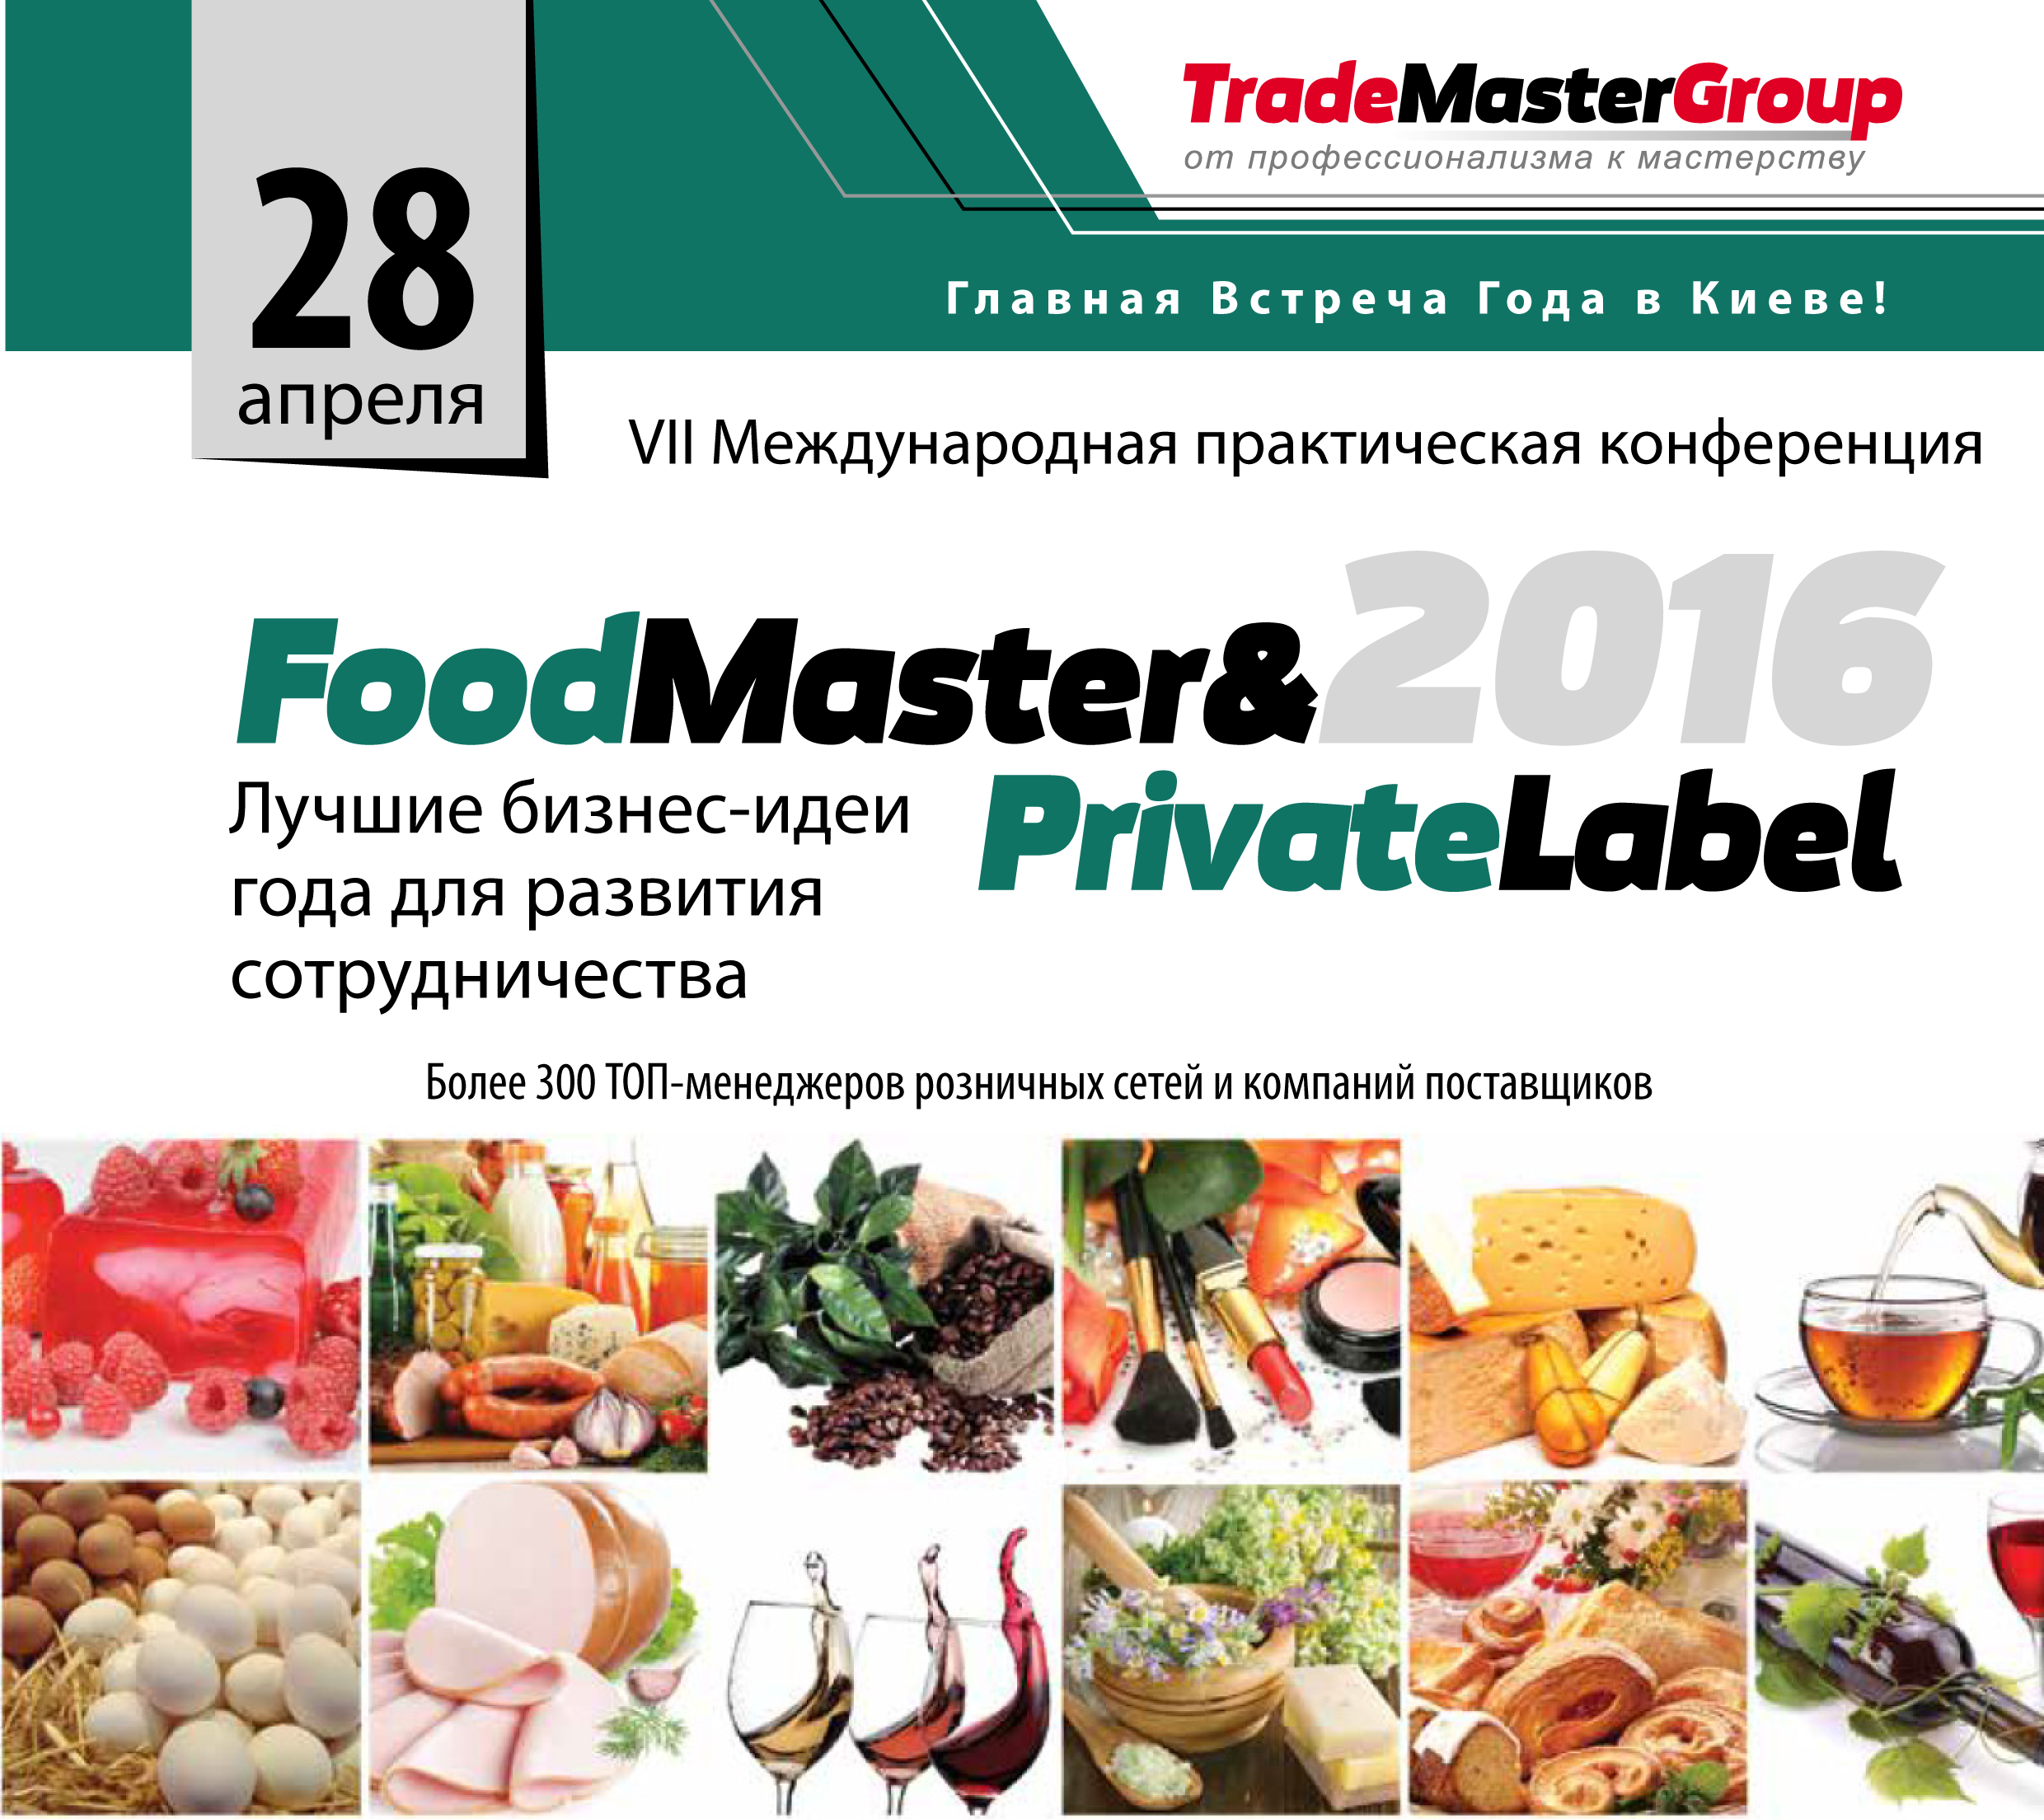 FoodMaster&PrivateLabel-2016: Лучшие бизнес-идеи года для развития сотрудничества